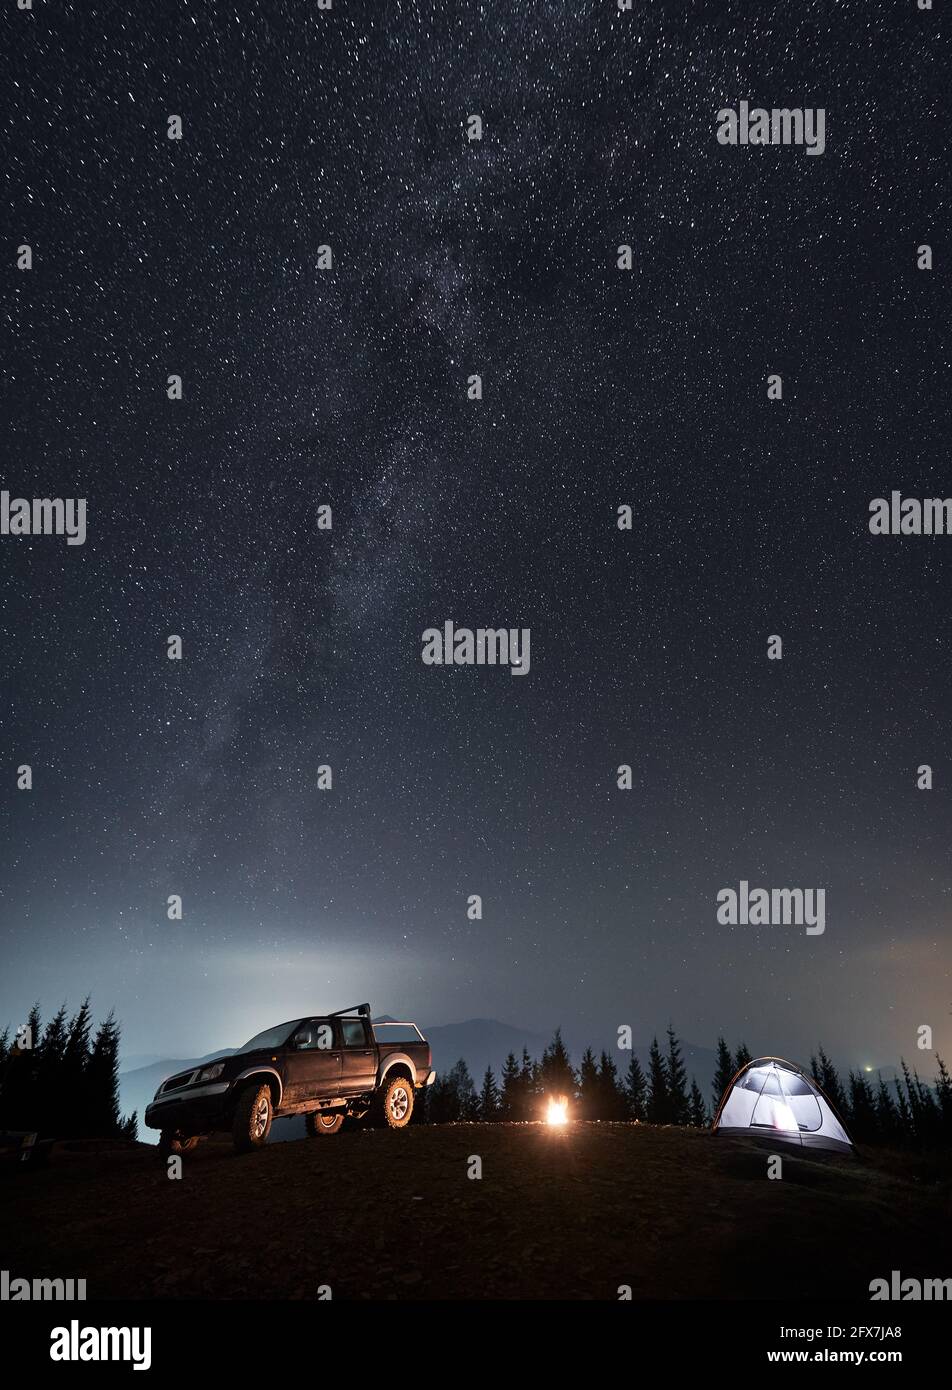 Farbenprächtiger nächtlicher Sternenhimmel und Milchstraße über dem Ferienlager auf einem Berghang. Schwarzes SUV, beleuchtetes Zelt und Lagerfeuer zwischen ihnen auf dem Hintergrund von Silhouetten von Bäumen und Bergen. Stockfoto